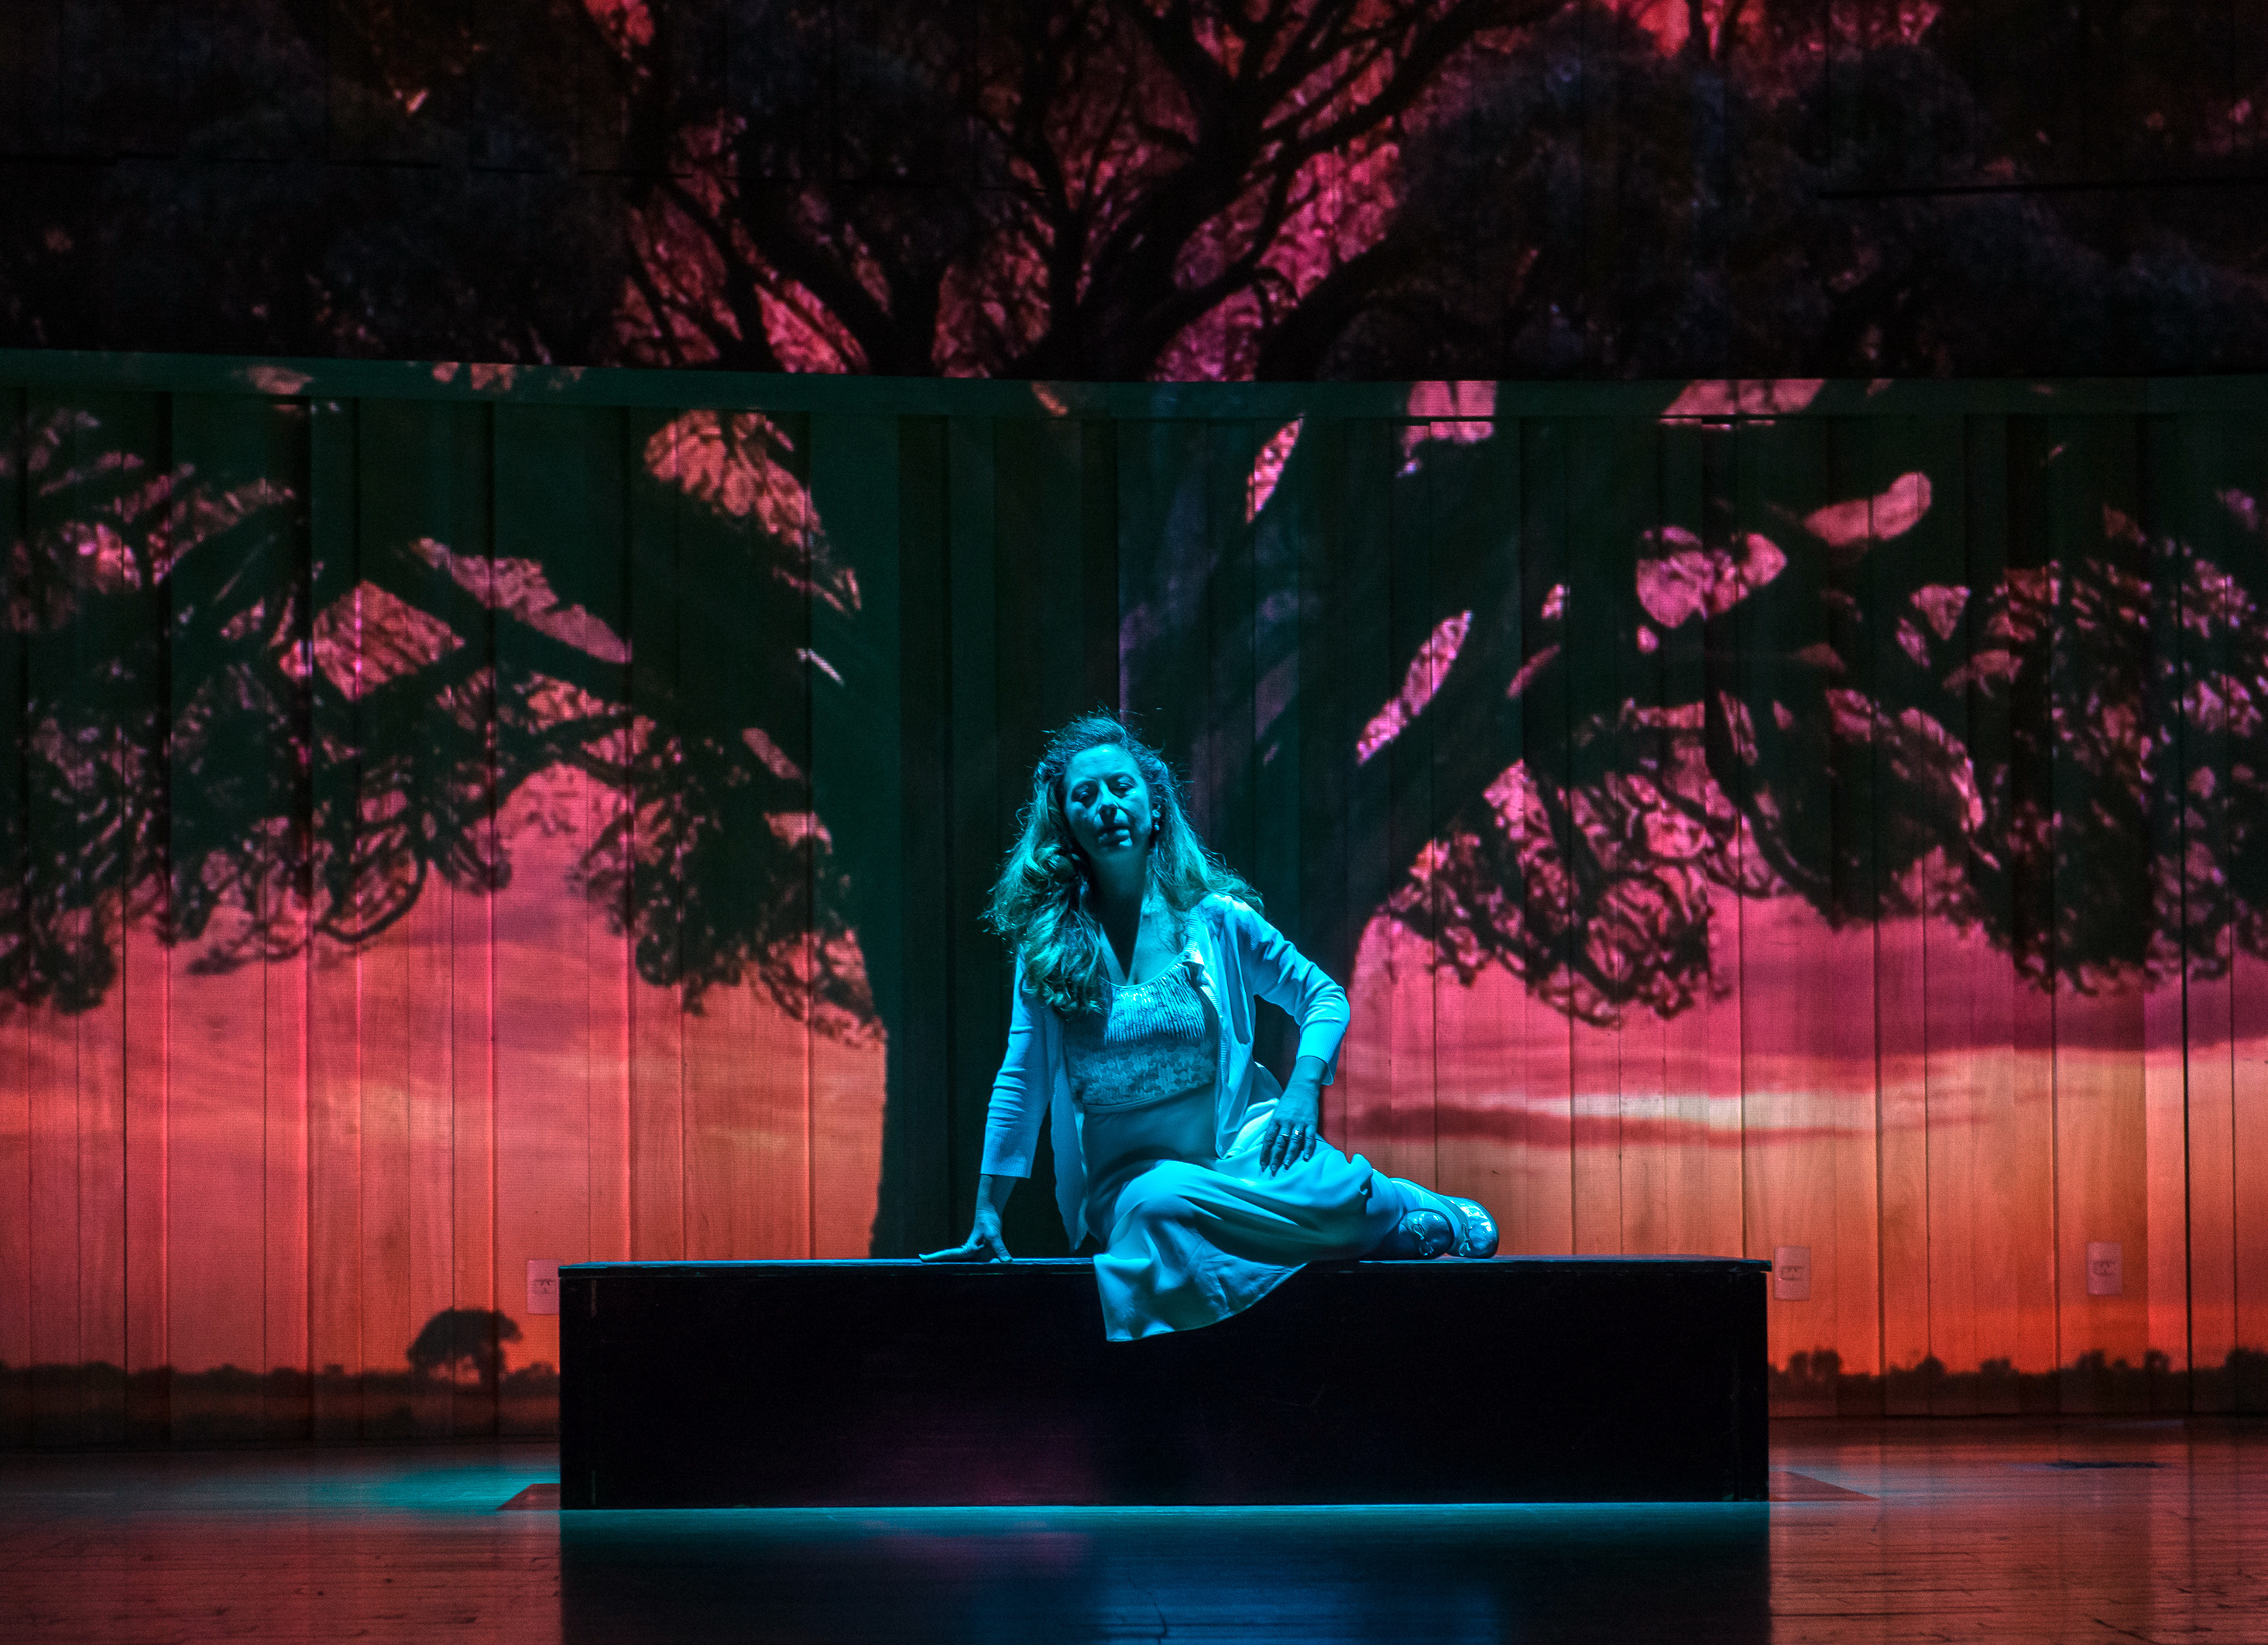 La ópera "Secretos del árbol", se estrenó el fin de semana pasado en la Usina del Arte, (Foto: Liliana Morsia)